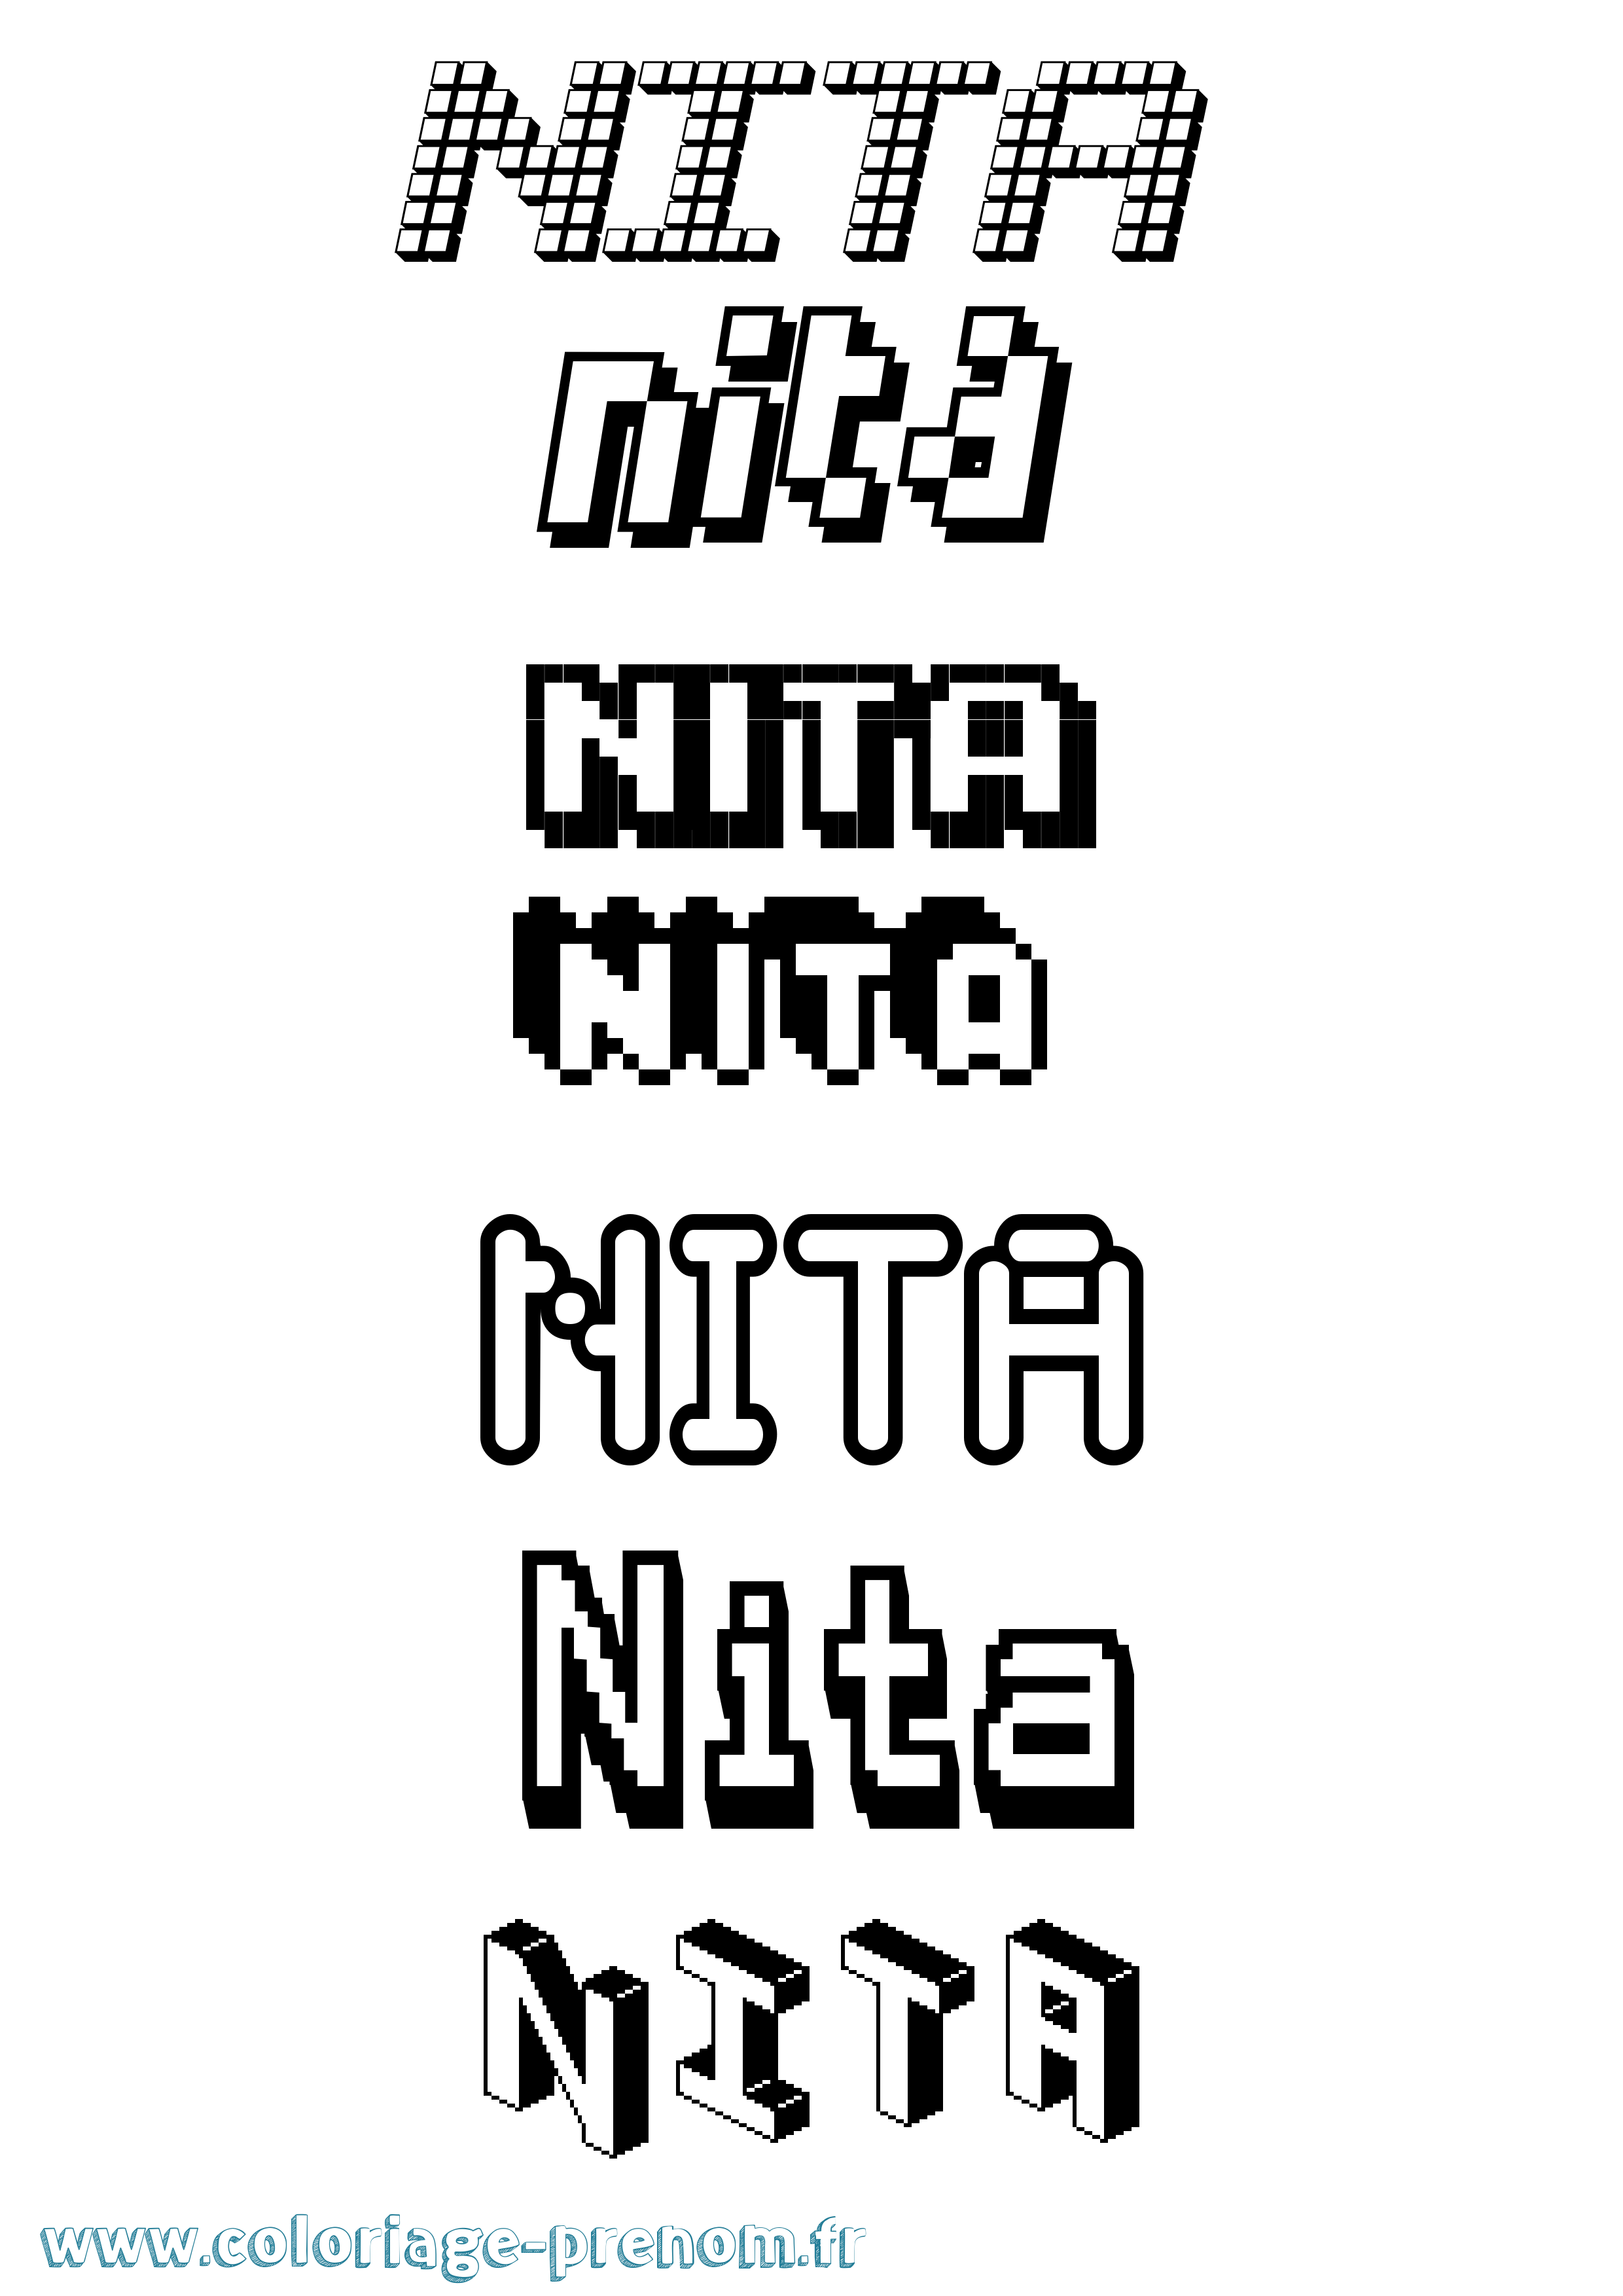 Coloriage prénom Nita Pixel